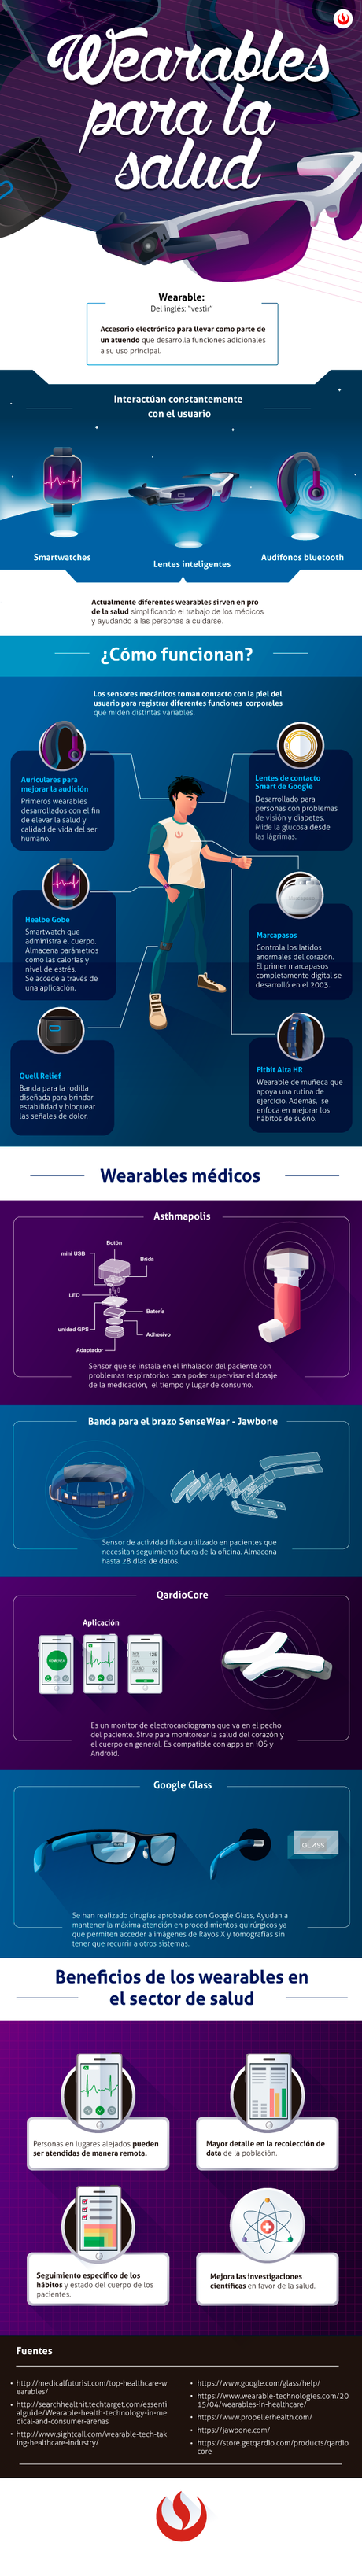 Infografía Wearables para la salud.